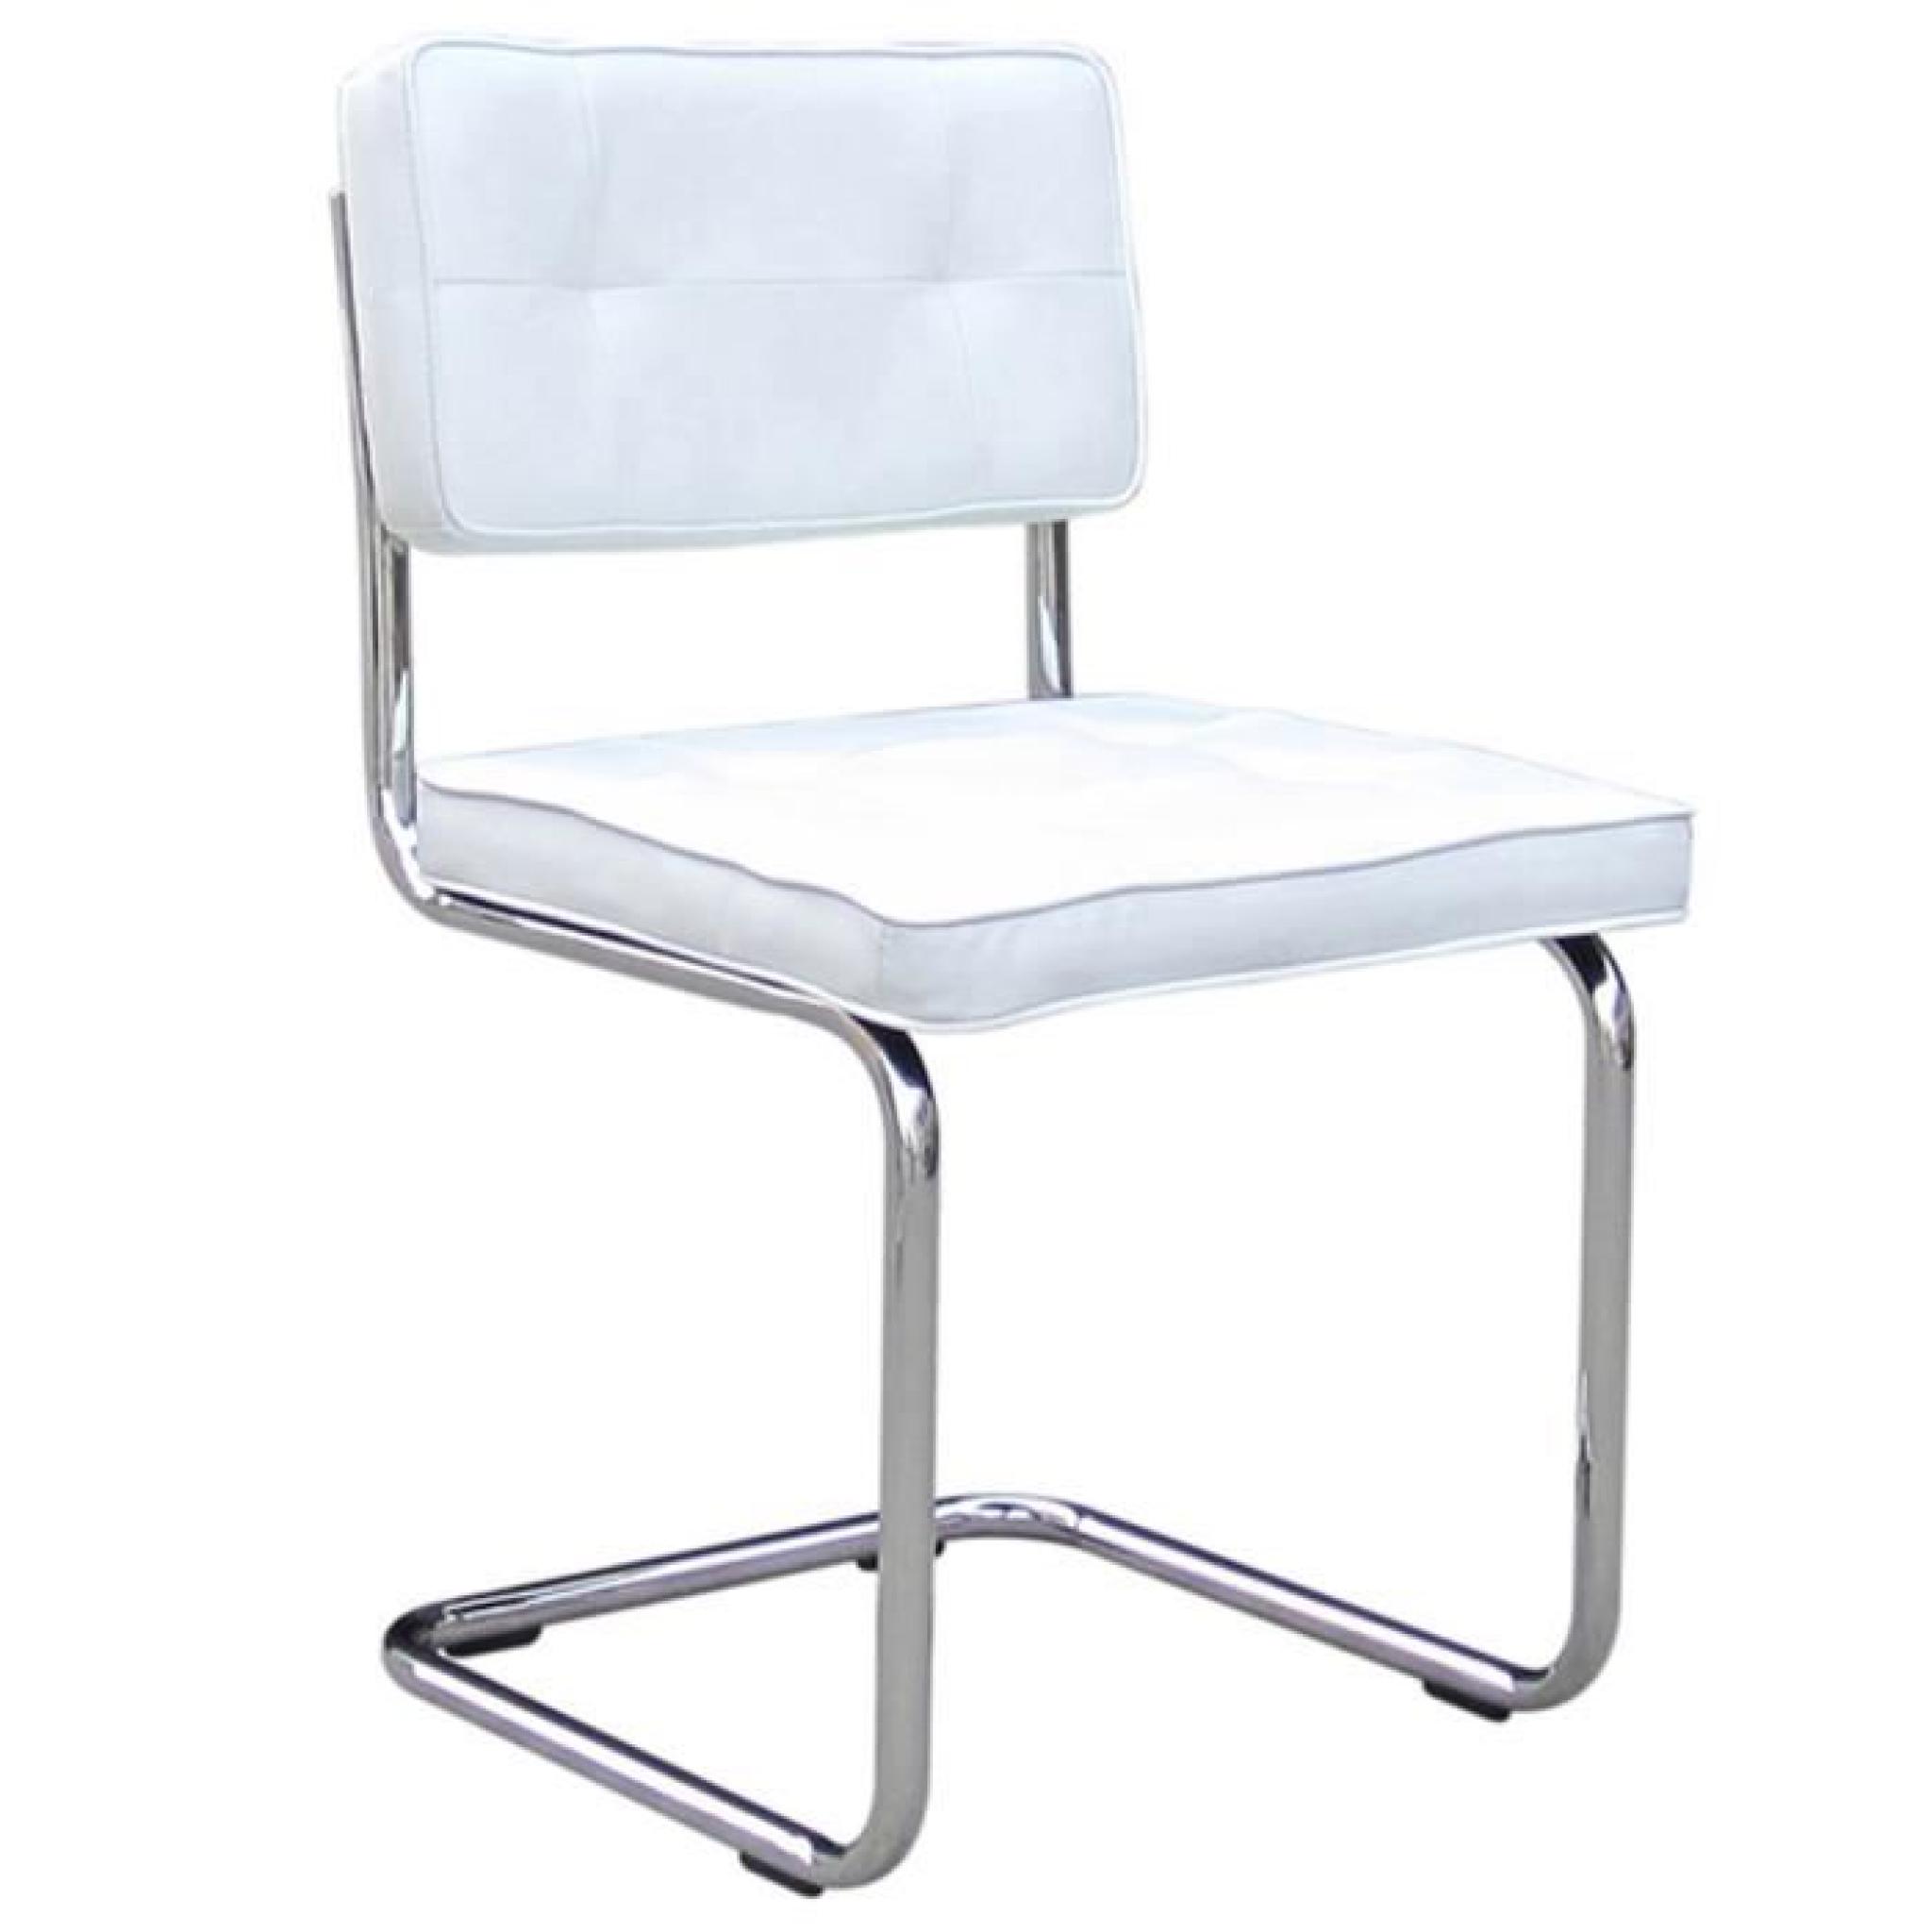 Lot de 2 chaises blanche cadre alu en métal, H84 x L49 x P54 cm